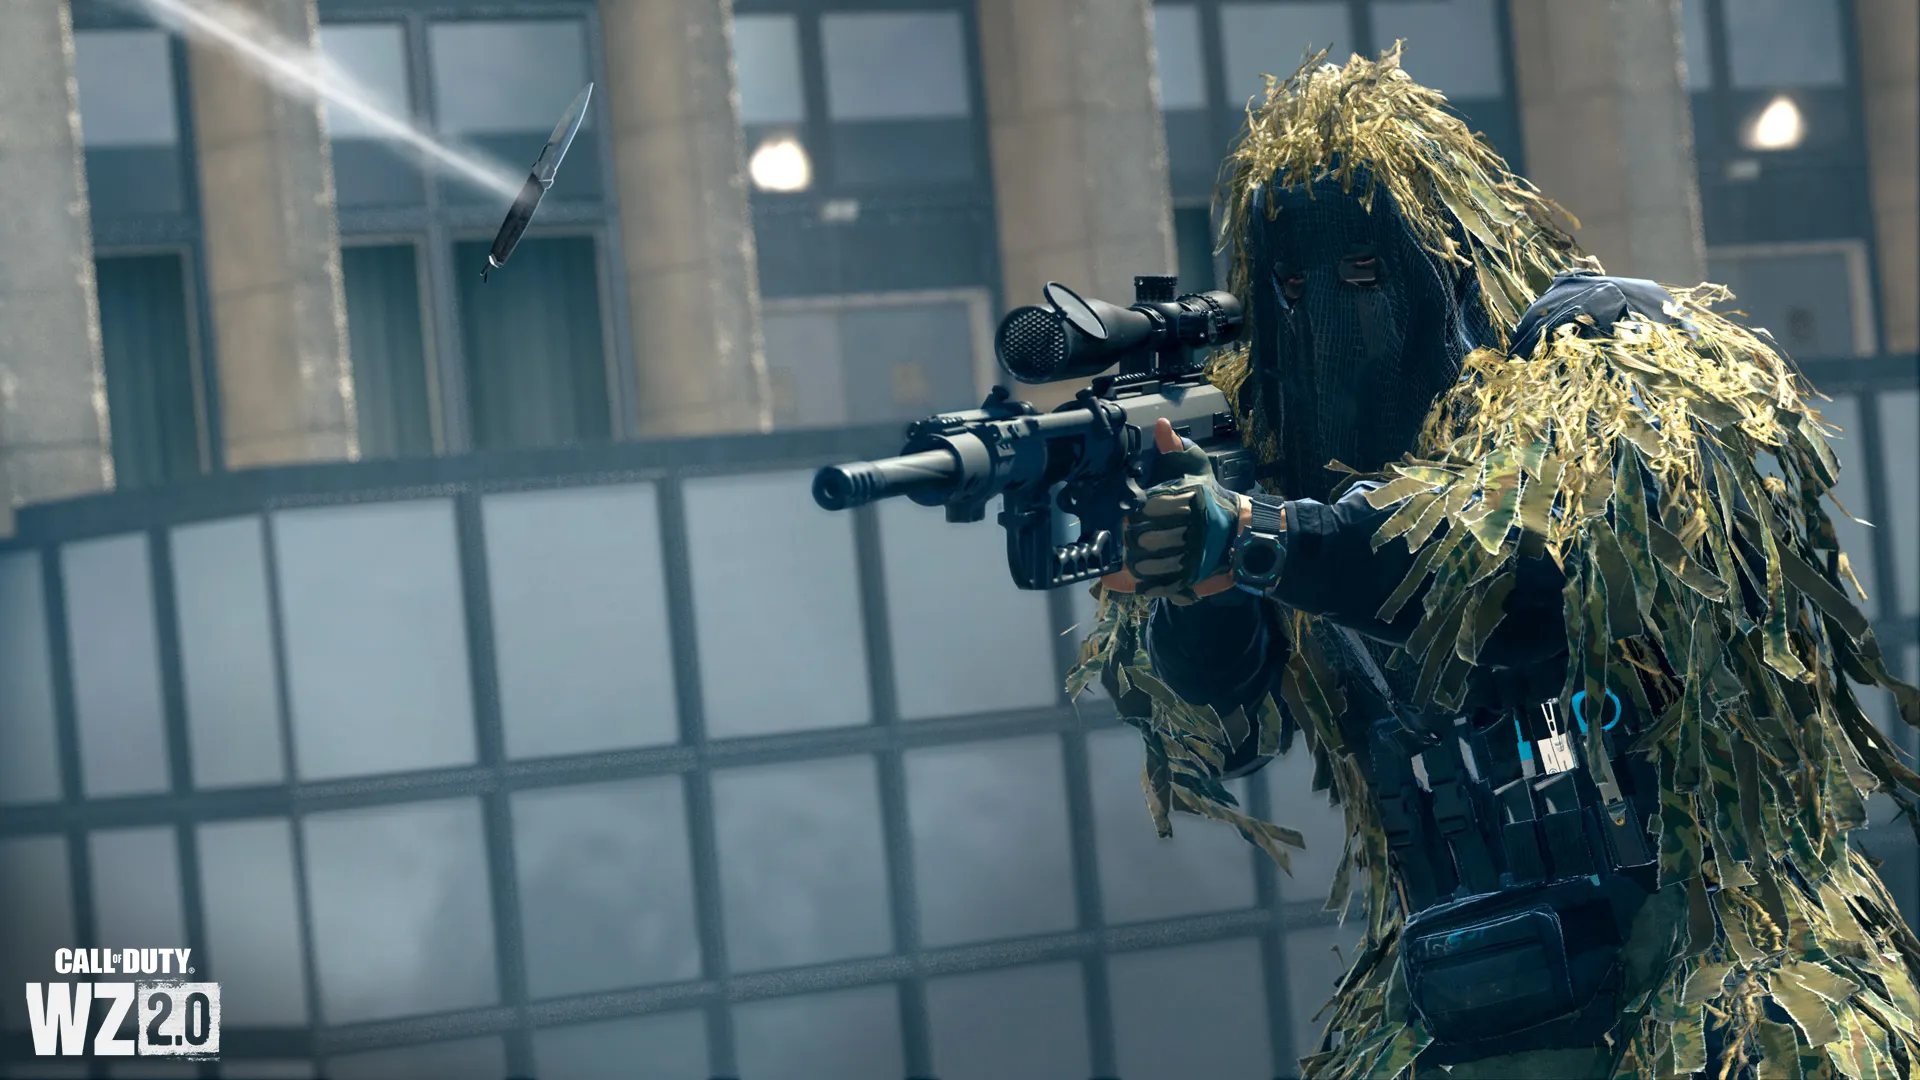 Sniper Call of Duty, který se chystá zasáhnout házet nožem